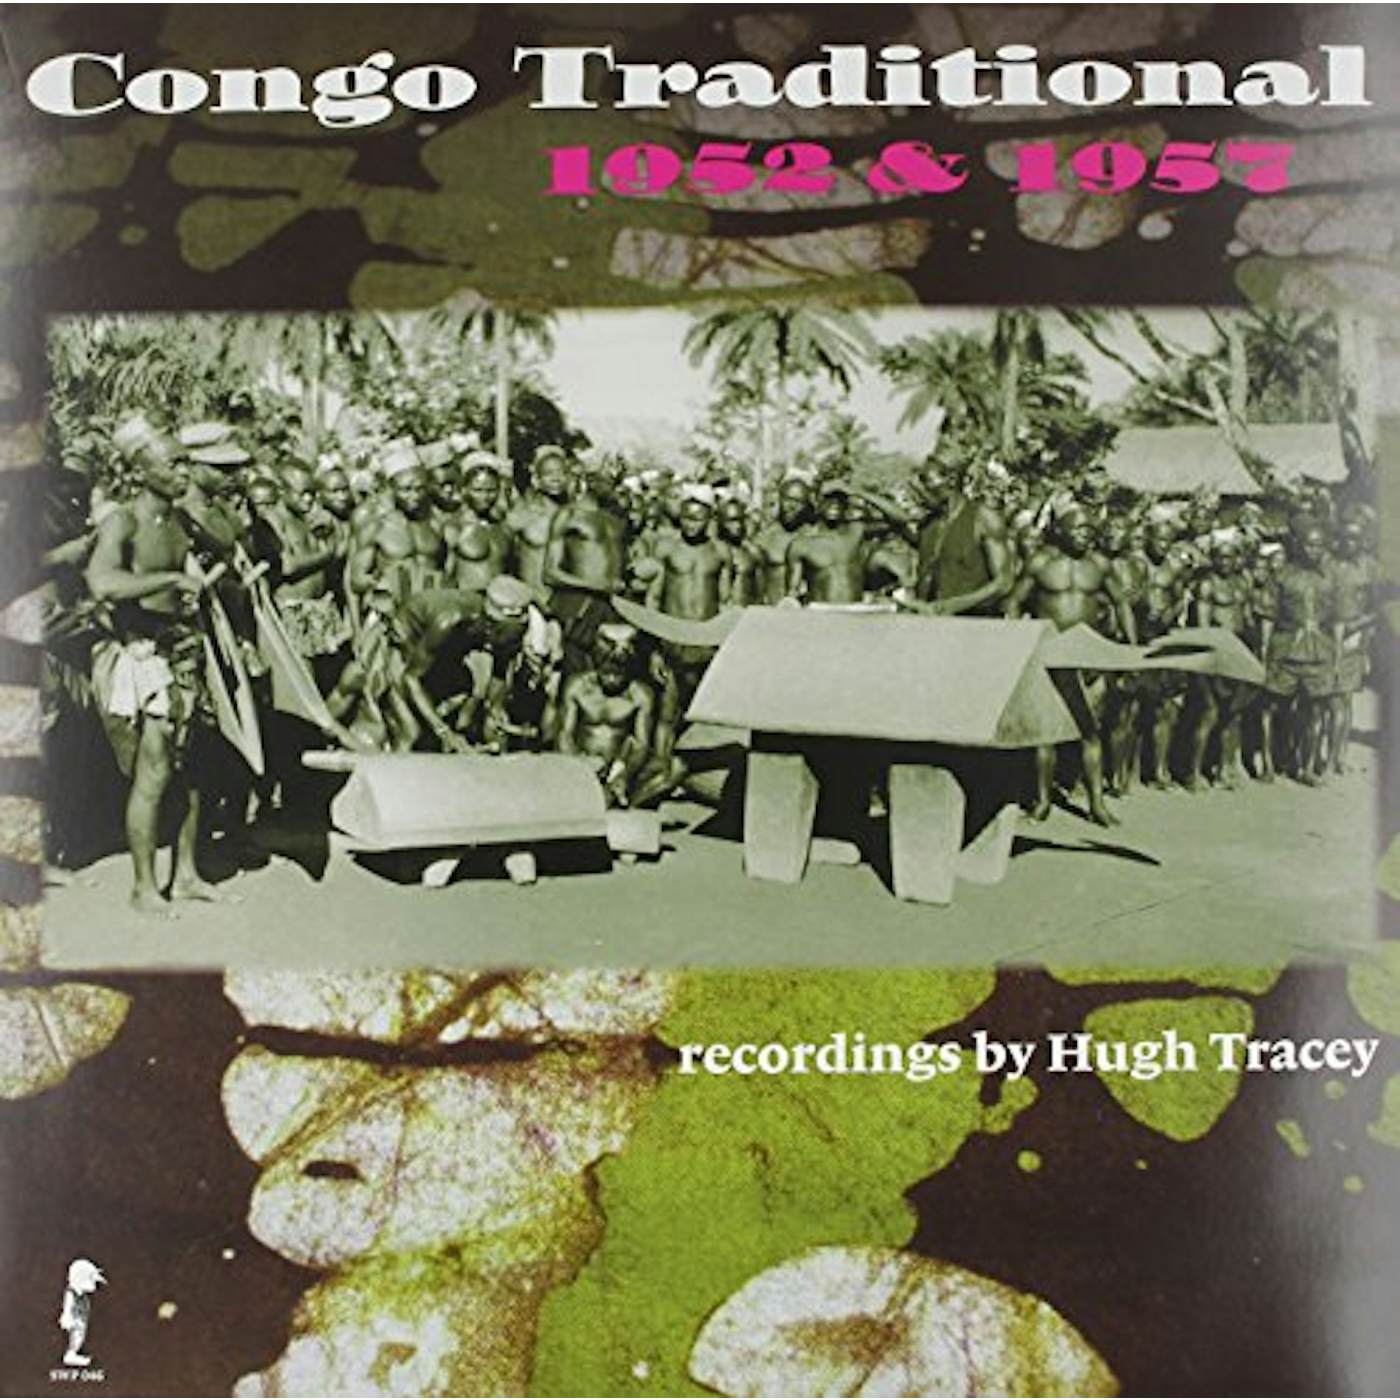 Hugh Tracey CONGO TRADITIONAL 1952 & 1957 Vinyl Record